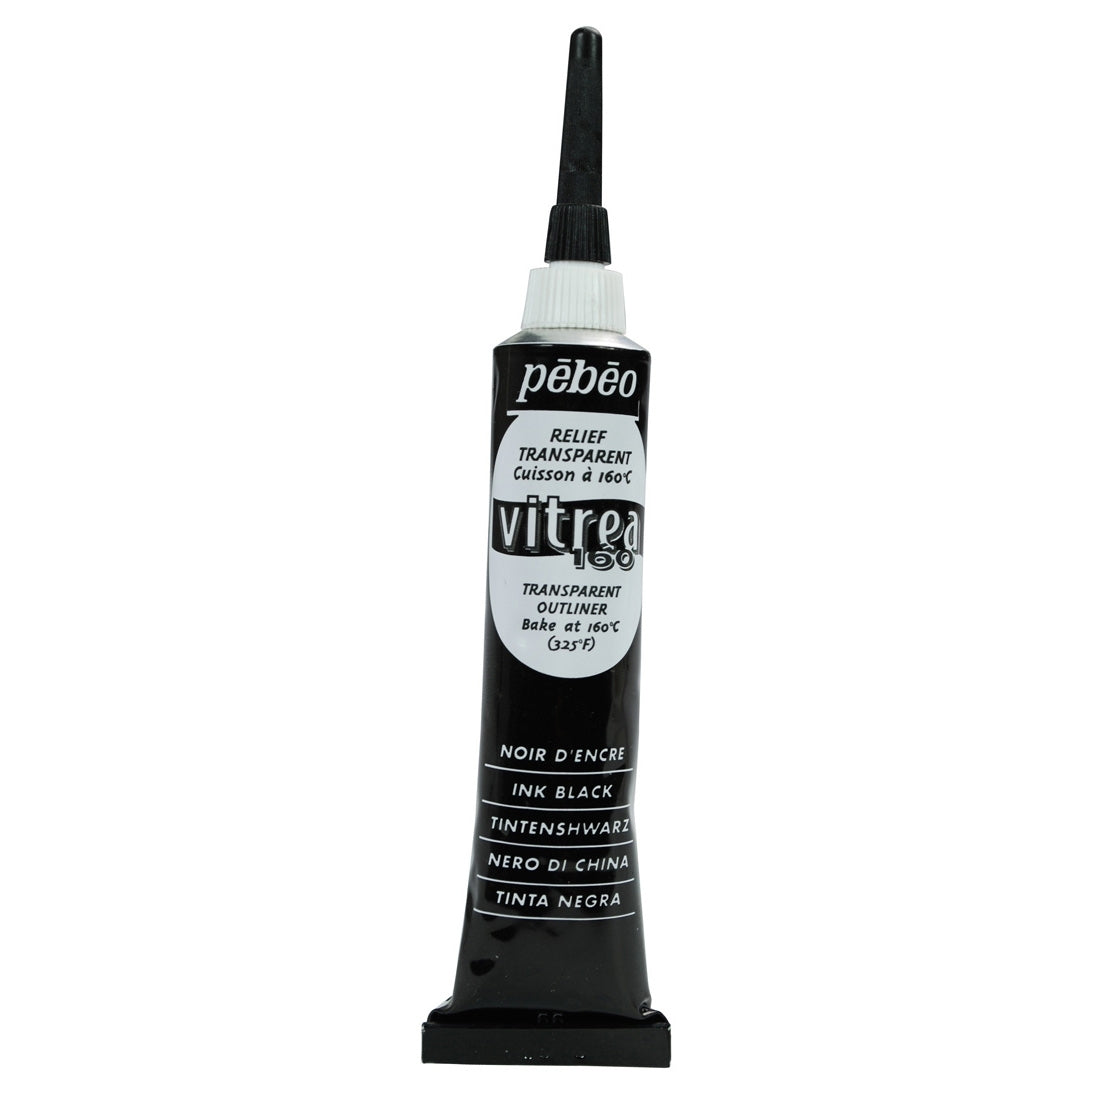 Pebeo - Vitrea 160 - Glass & Tile Paint - Gloss Outliner - Ink Black 20ml